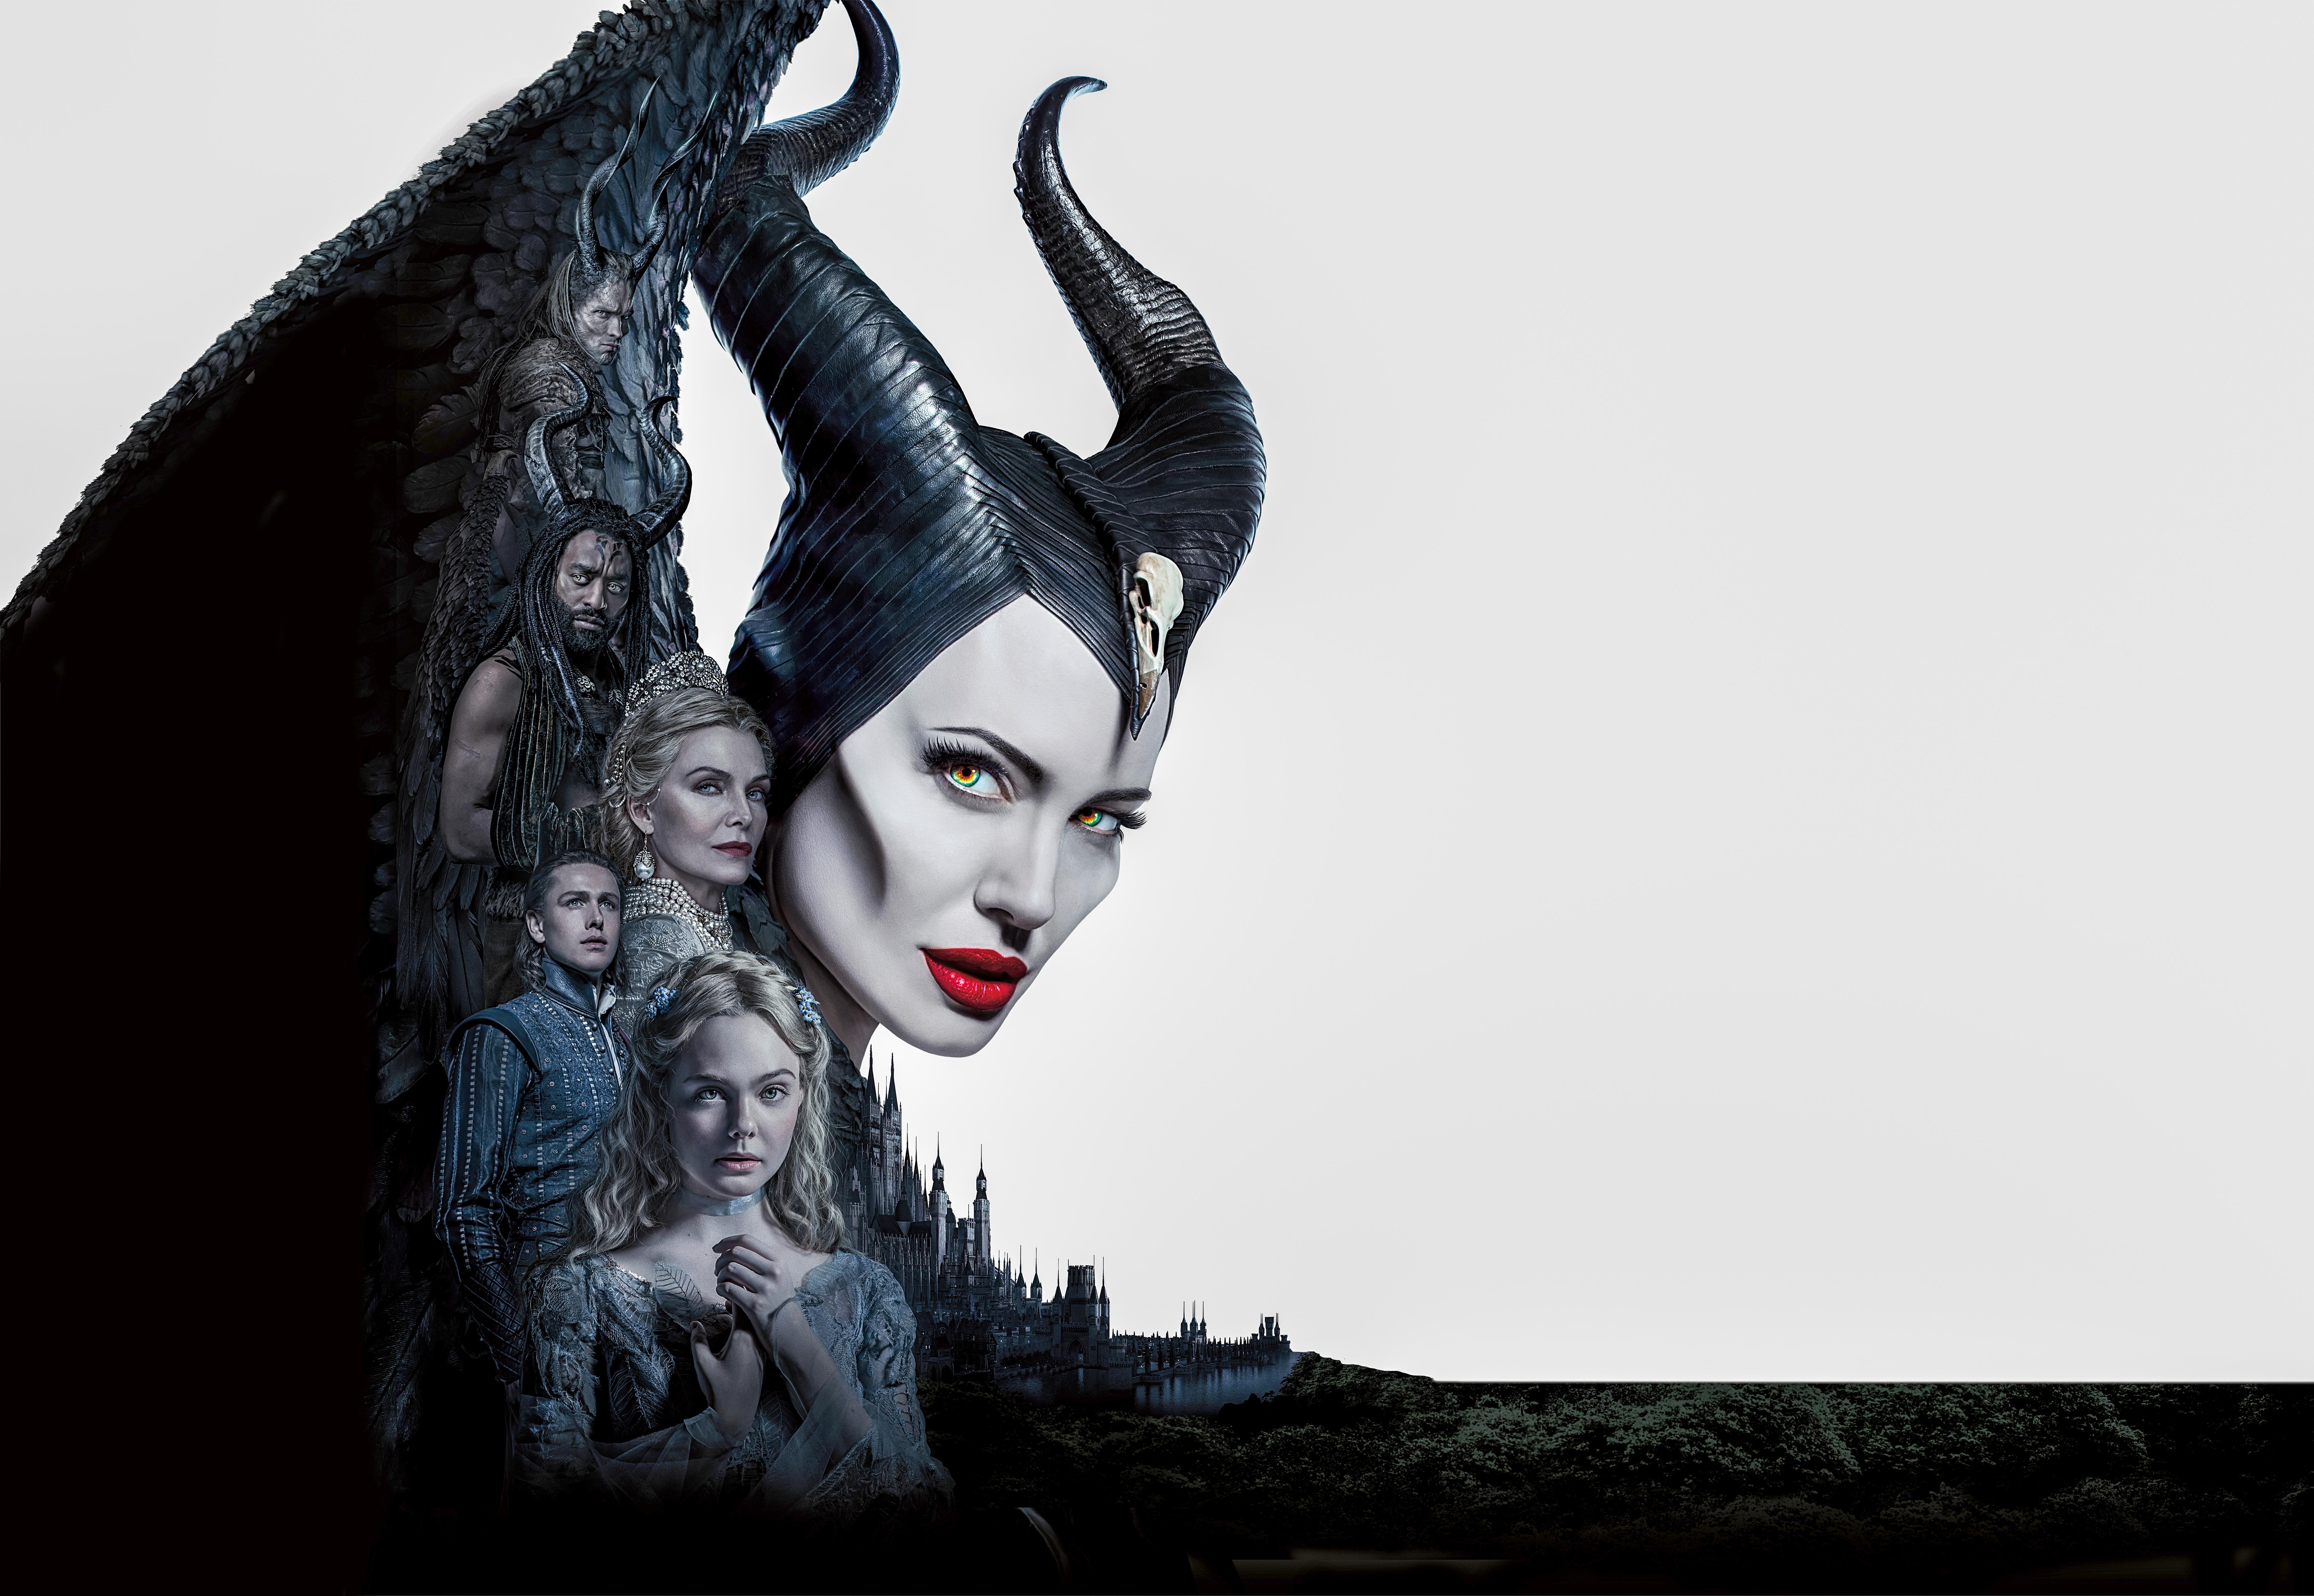 Wallpaper Maleficent: Mistress of Evil, 4K, Movies